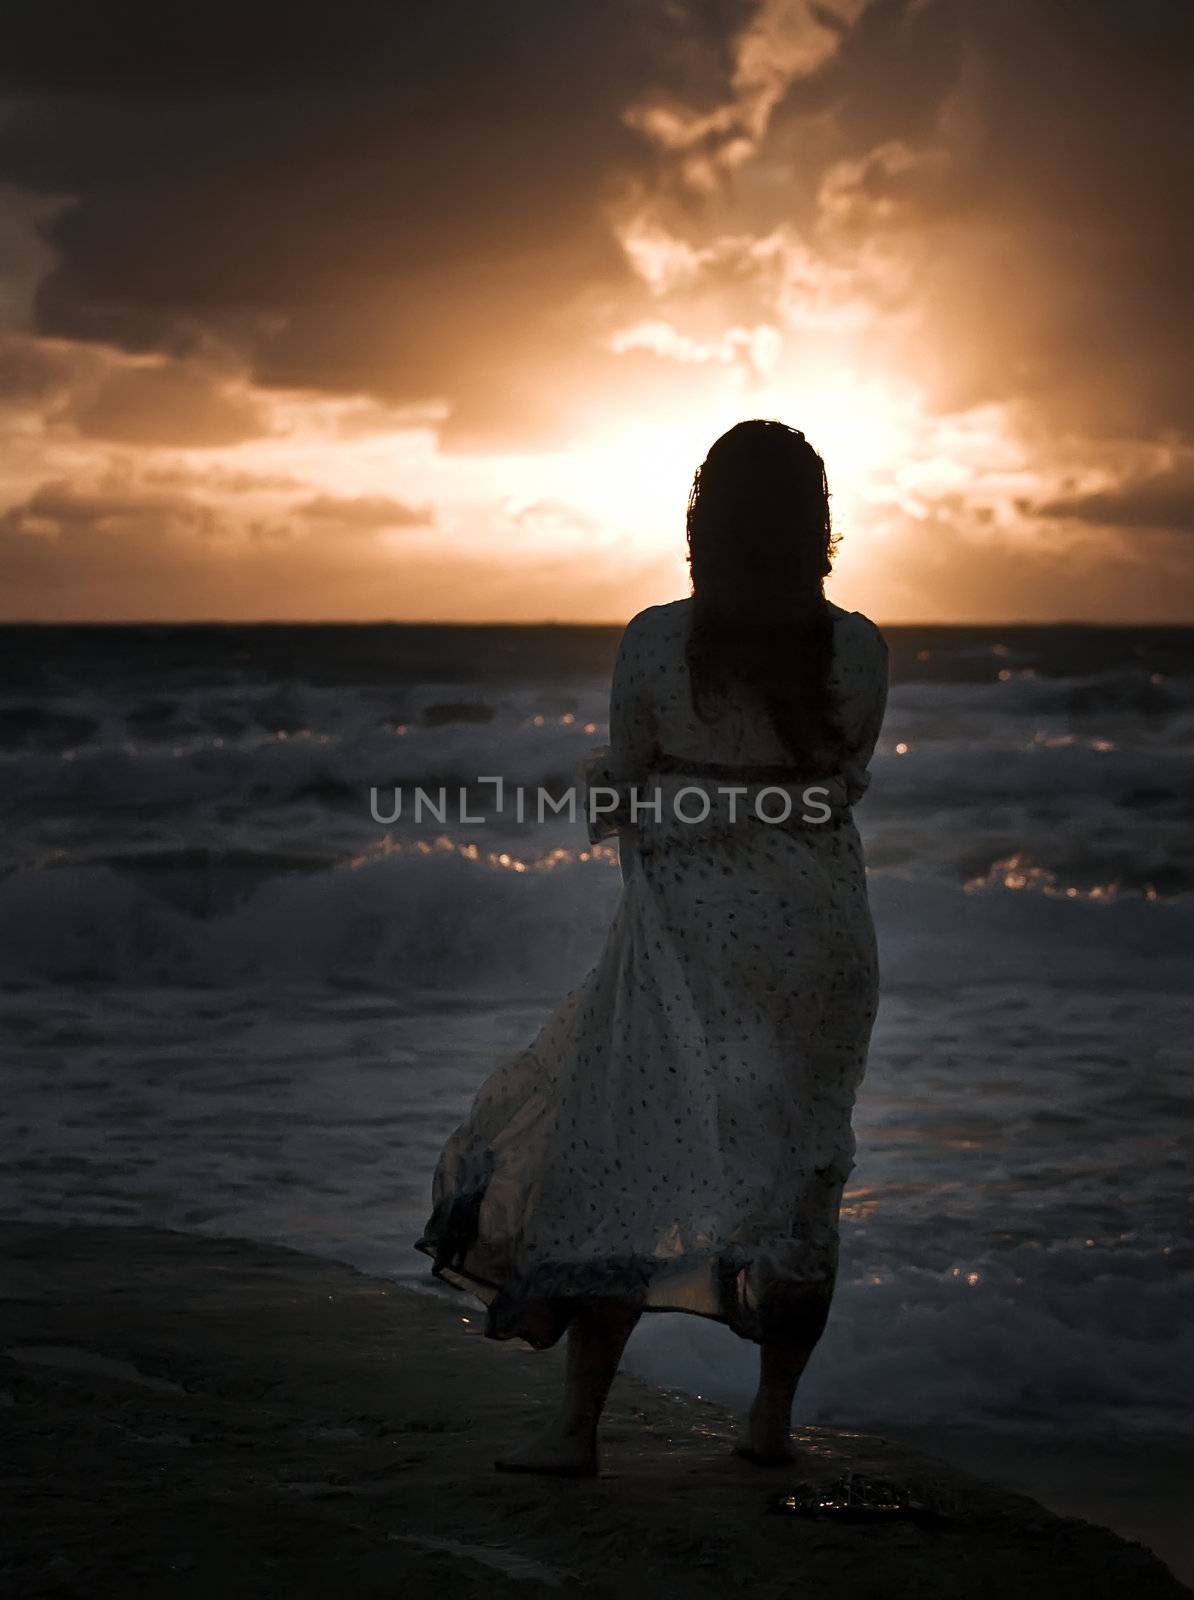 Lone woman walking along a beach in winter
Model: Elaine Saliba